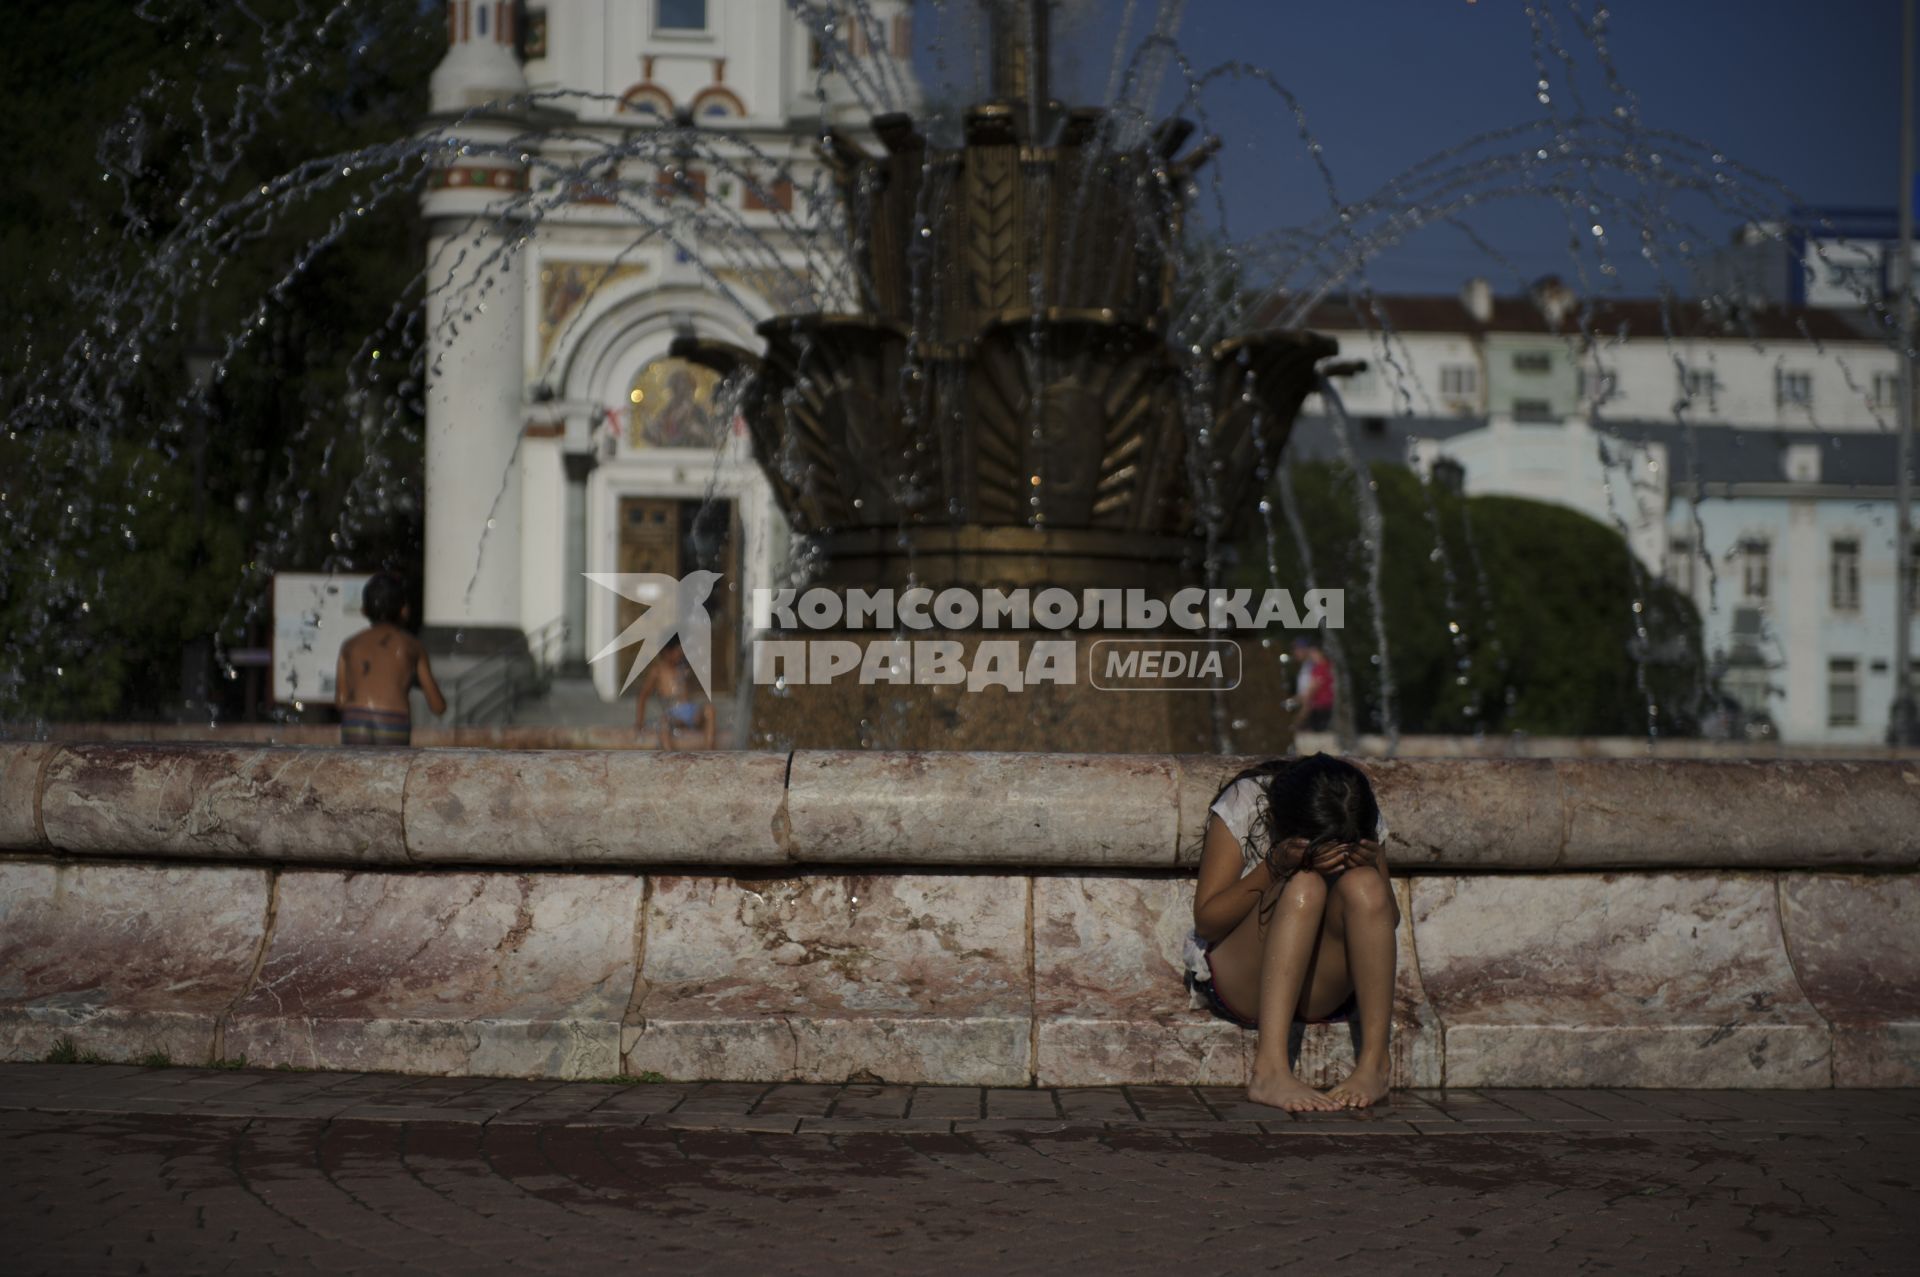 Екатеринбург. Девочка у фонтана на площади труда во время летней жары